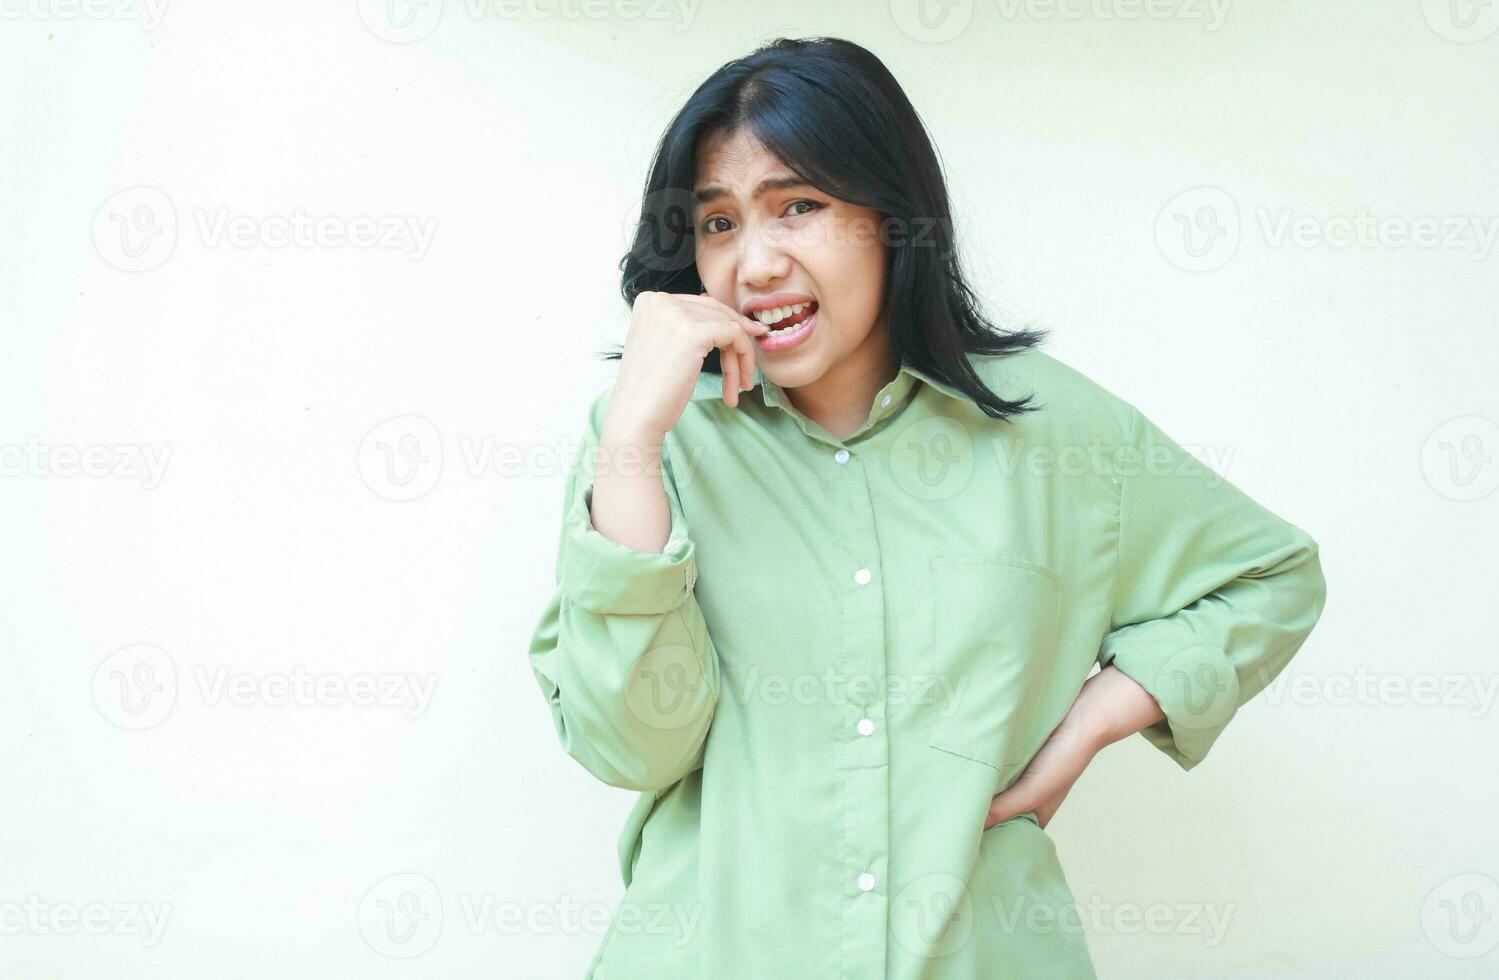 erschrocken asiatisch Frau beißen ihr Finger mit Hände auf Taille suchen beim Kamera Show erschrocken Gesicht tragen Grün übergroß Hemd isoliert auf Weiß Hintergrund foto